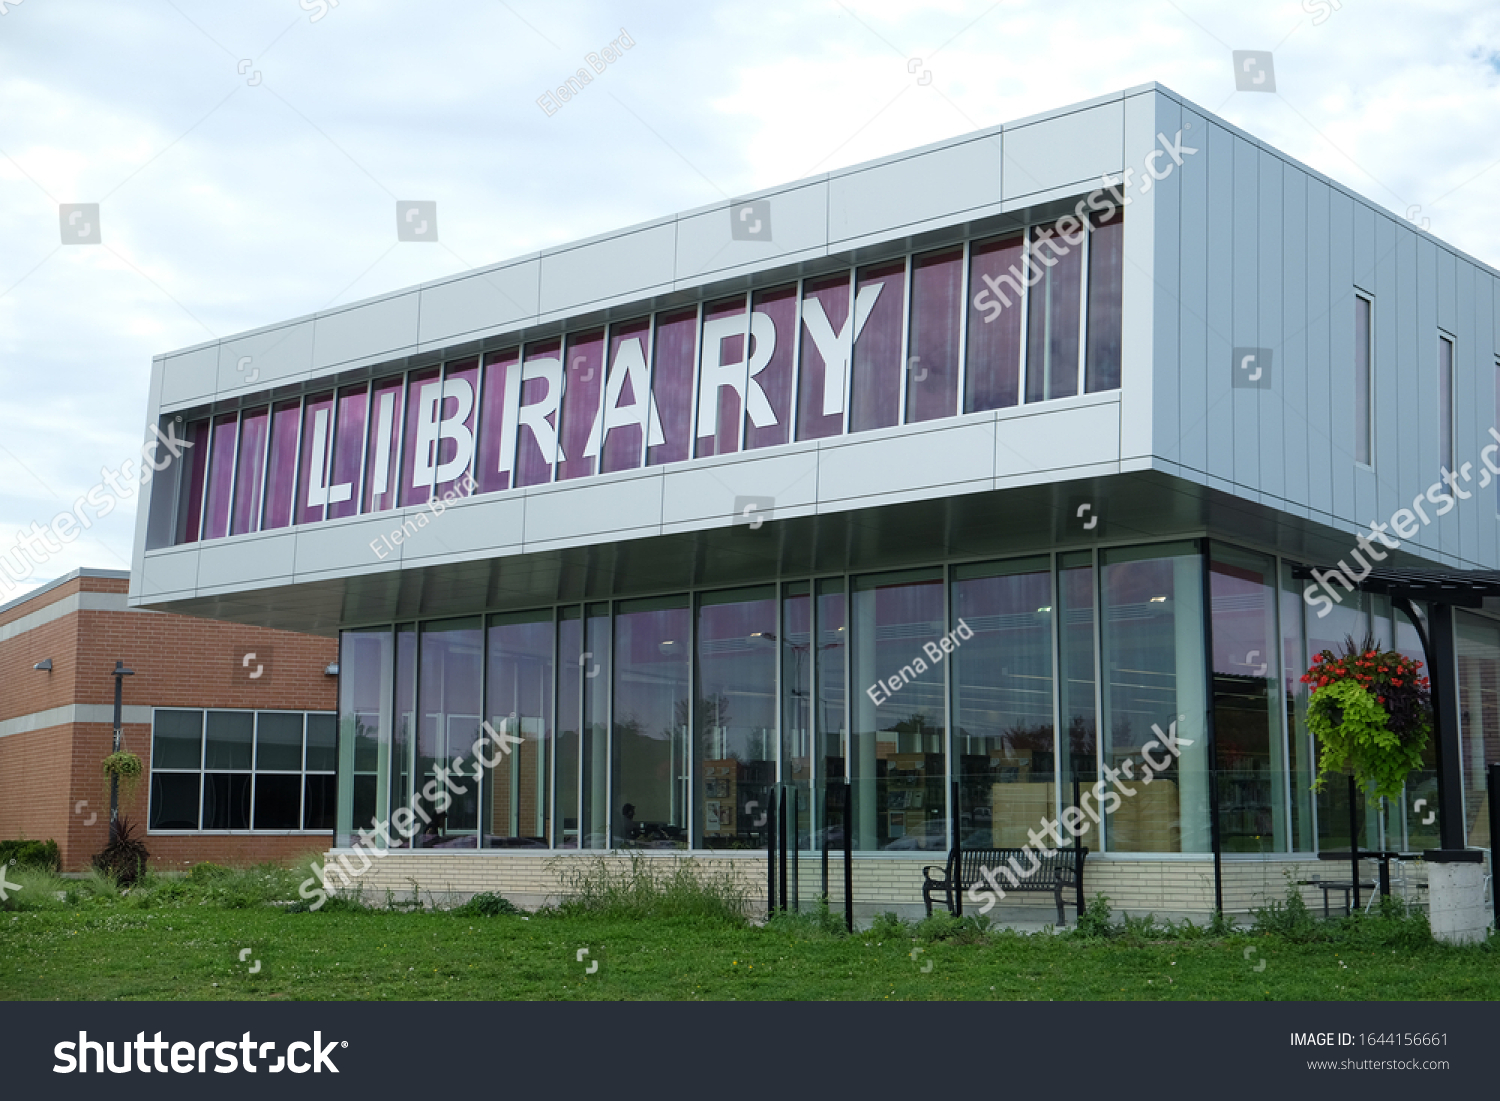 Perpustakaan eksternal